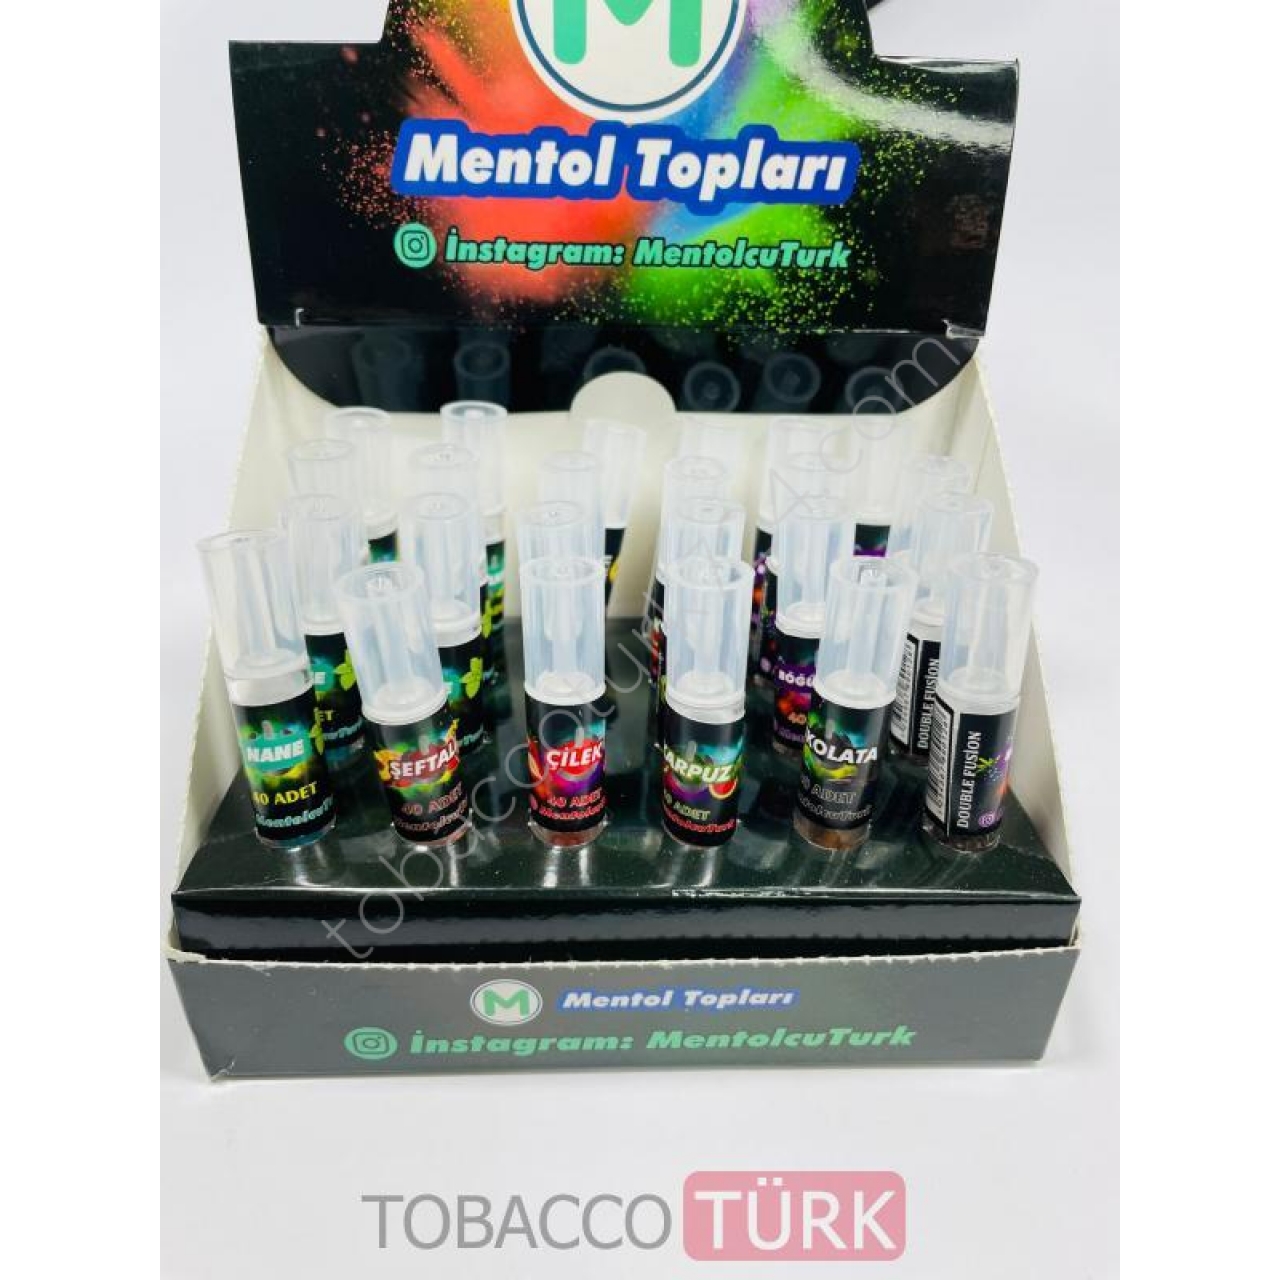 MentolTopları 40lı Sigara Aroma Kapsülleri